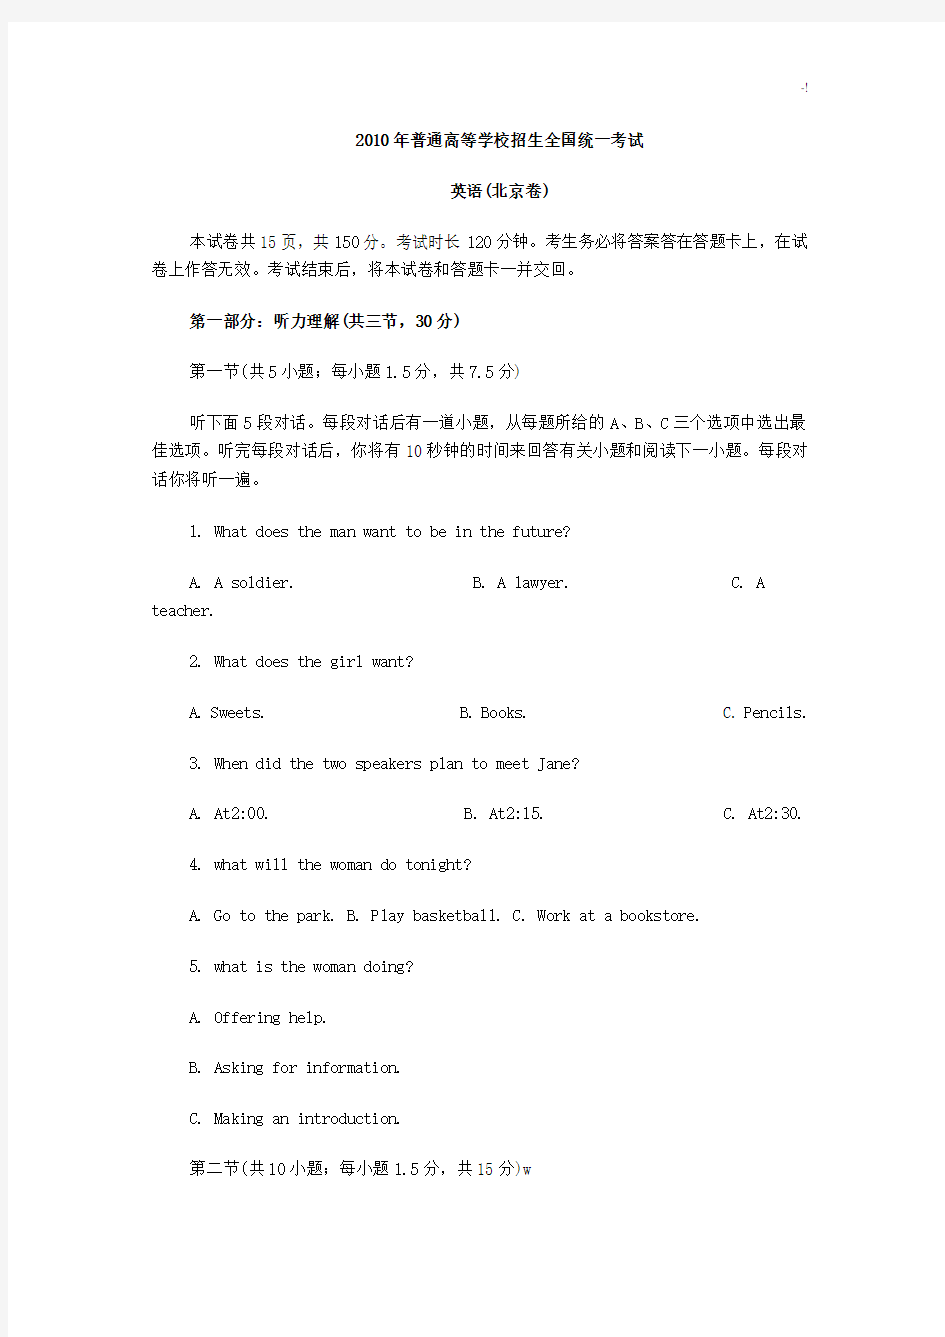 2010北京高考英语听力试题及其规范标准答案